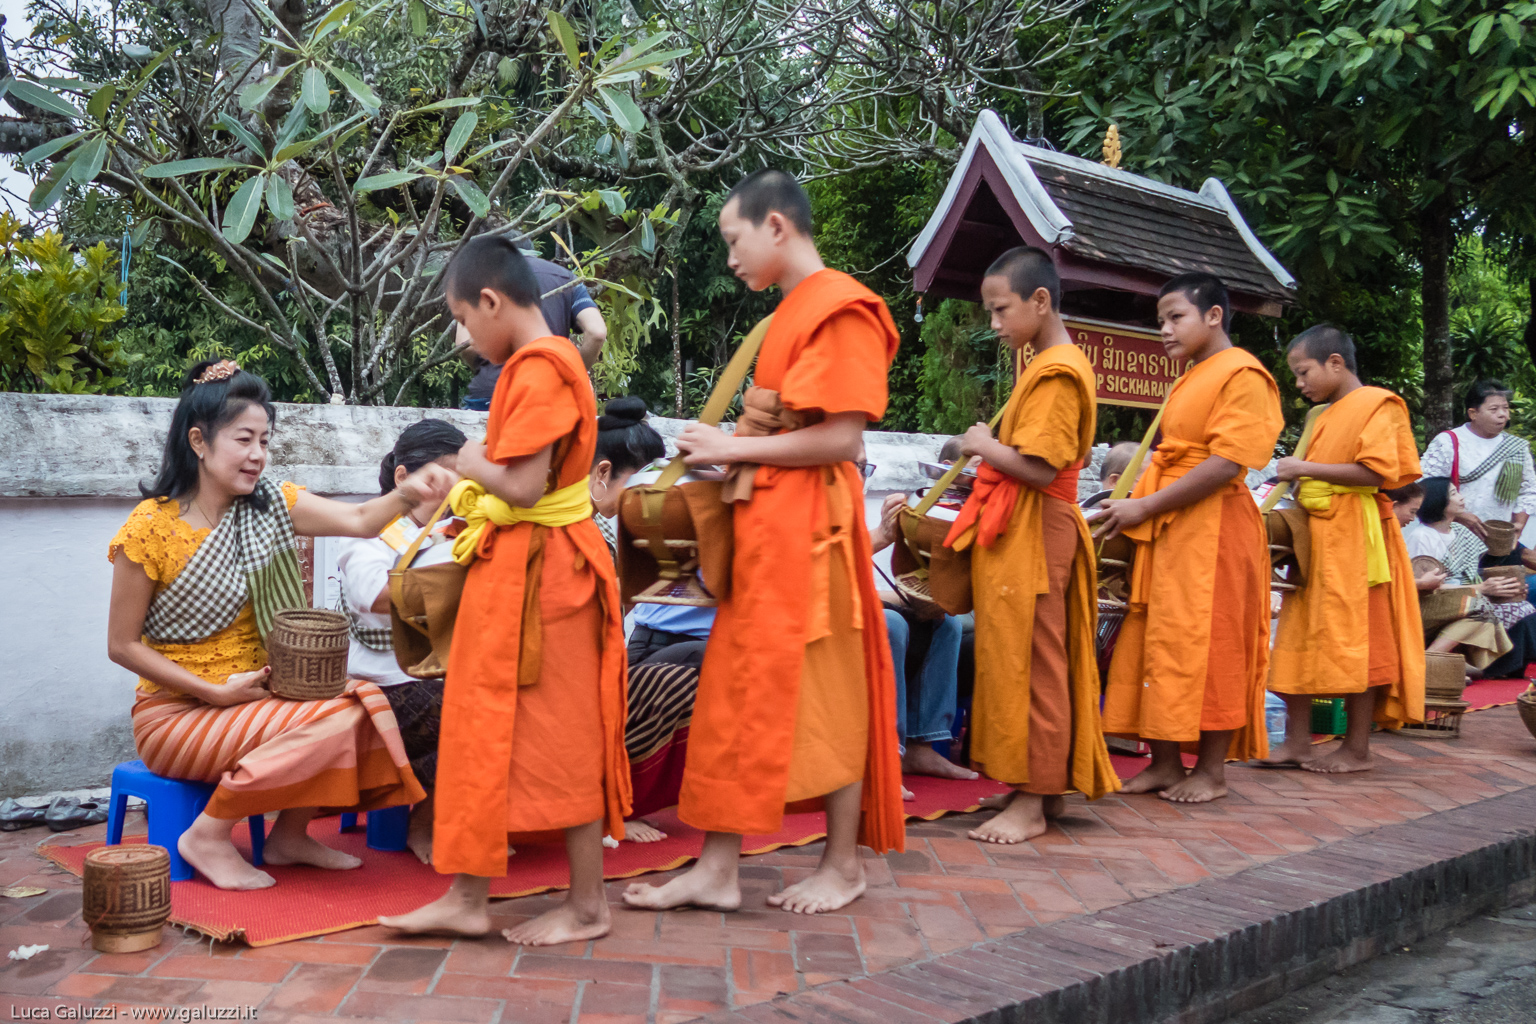 Tak Bat, una lunga processione silenziosa di monaci in abito arancione che attraversa le strade per ricevere manciate di riso caldo e profumato, che la popolazione locale offre in cestini di vimini, mentre il sole sorge sulla città di Luang Prabang